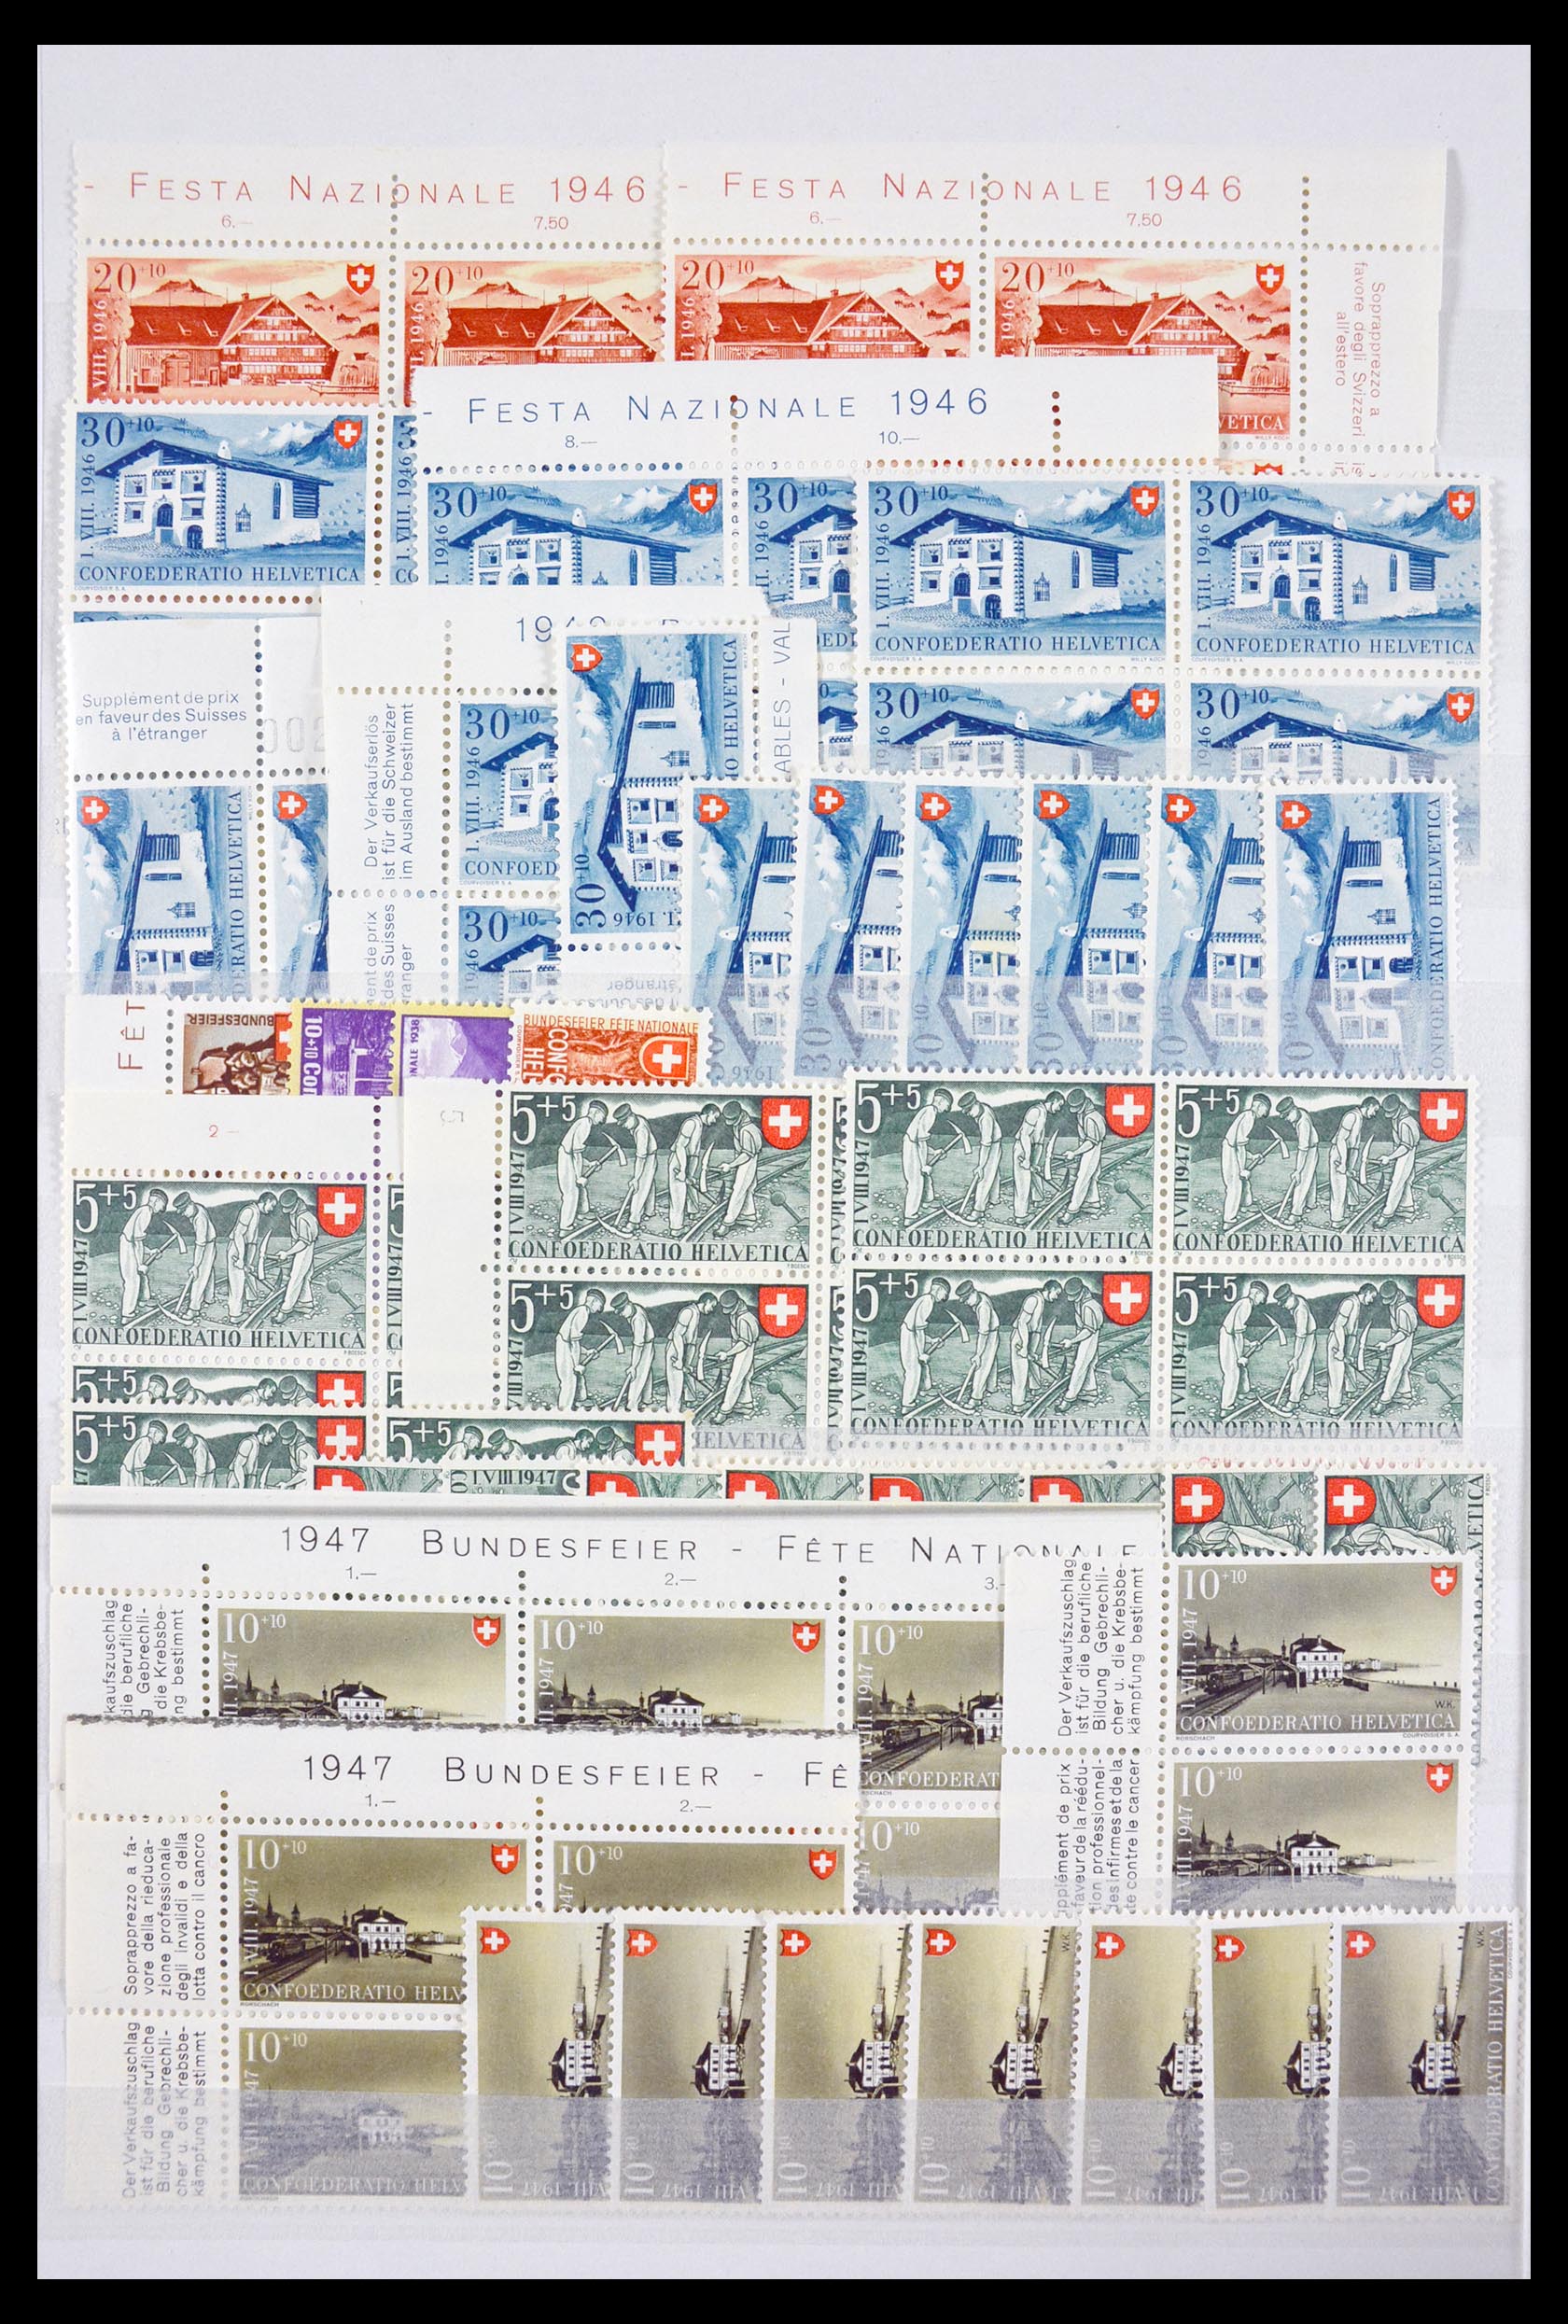 29604 072 - 29604 Zwitserland 1882-1960.